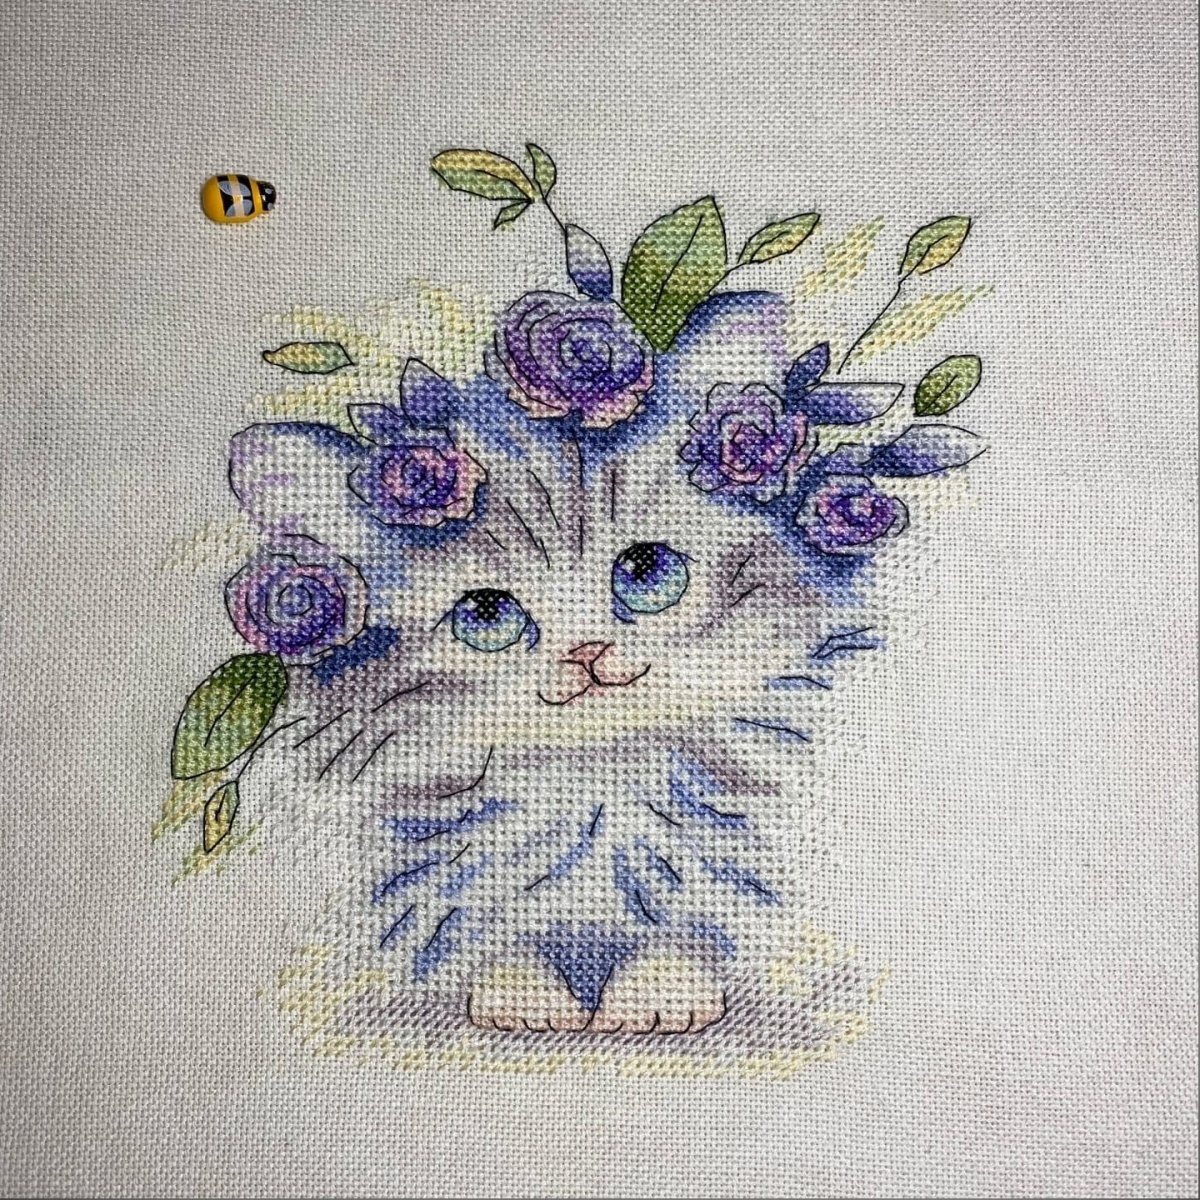 A Kitty Cross Stitch Pattern фото 3